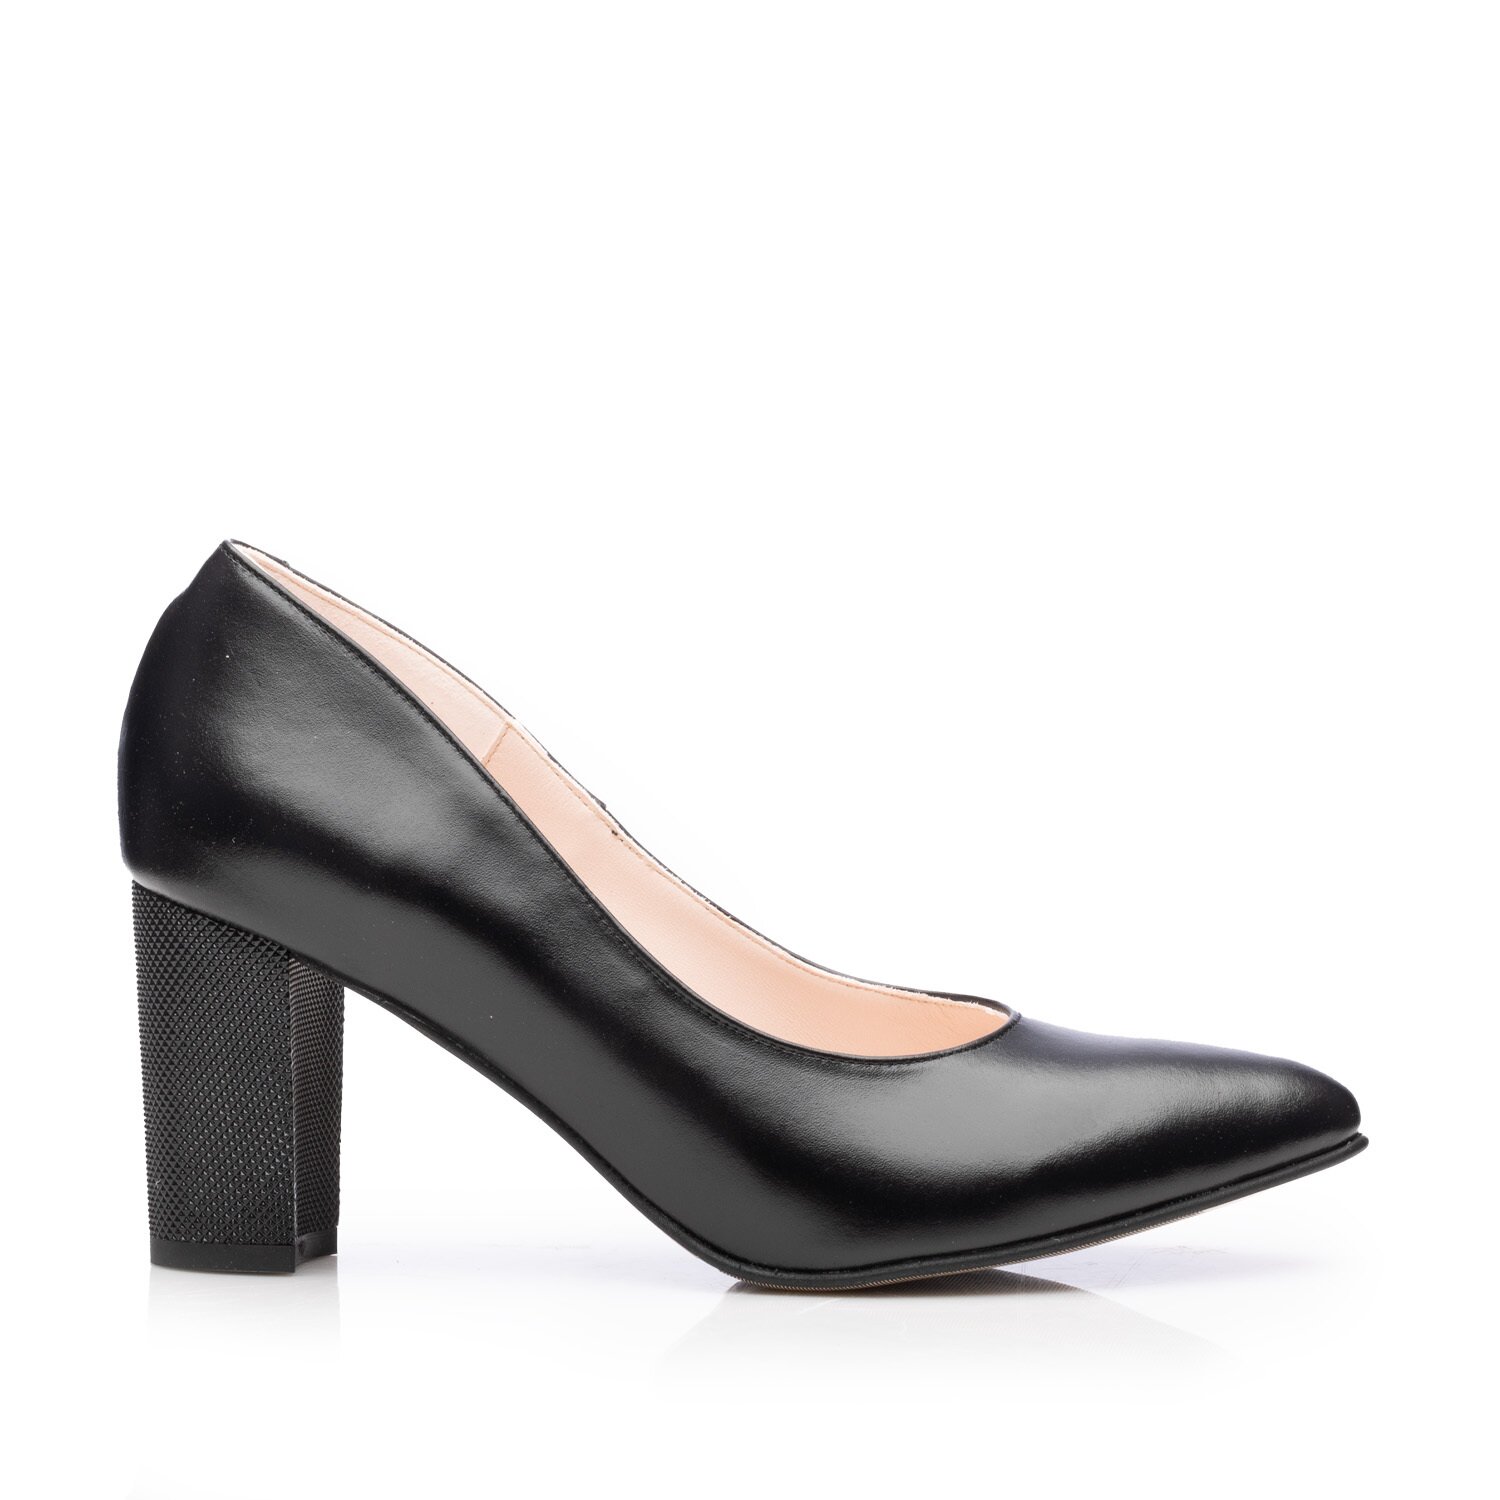 Pantofi eleganți damă din piele naturală - 43216 Negru Box